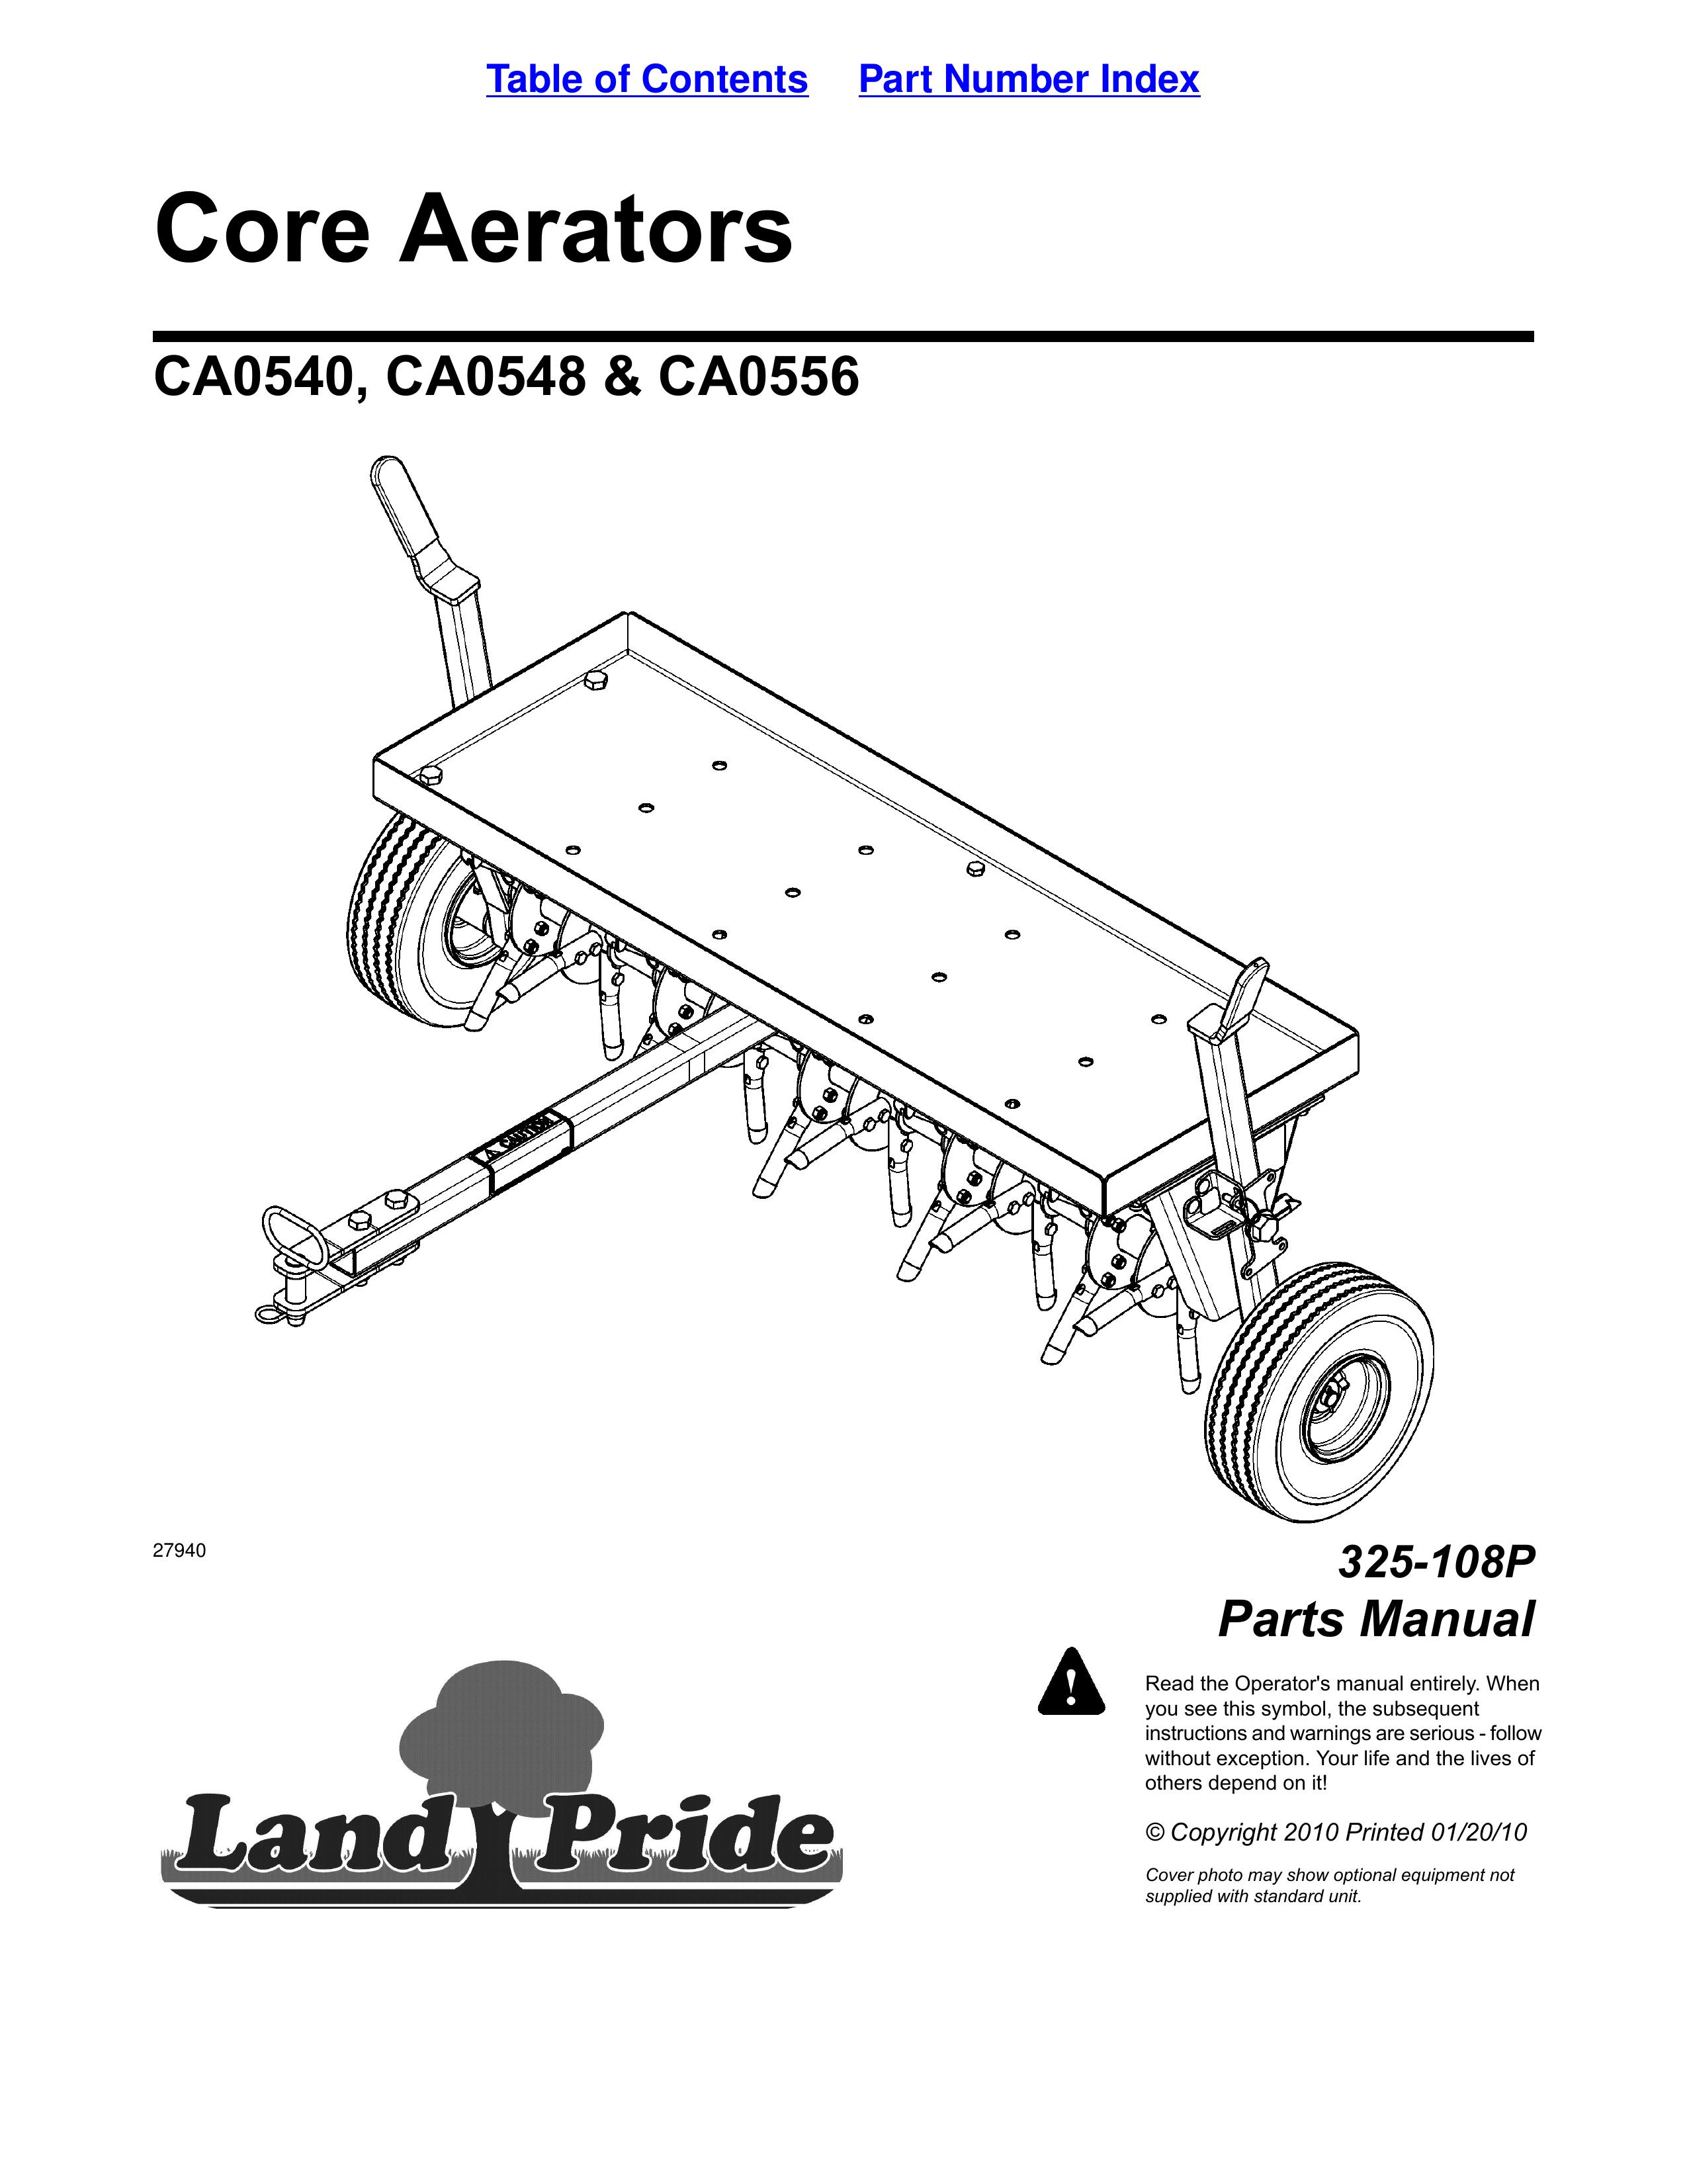 Land Pride CA0548 Lawn Aerator User Manual